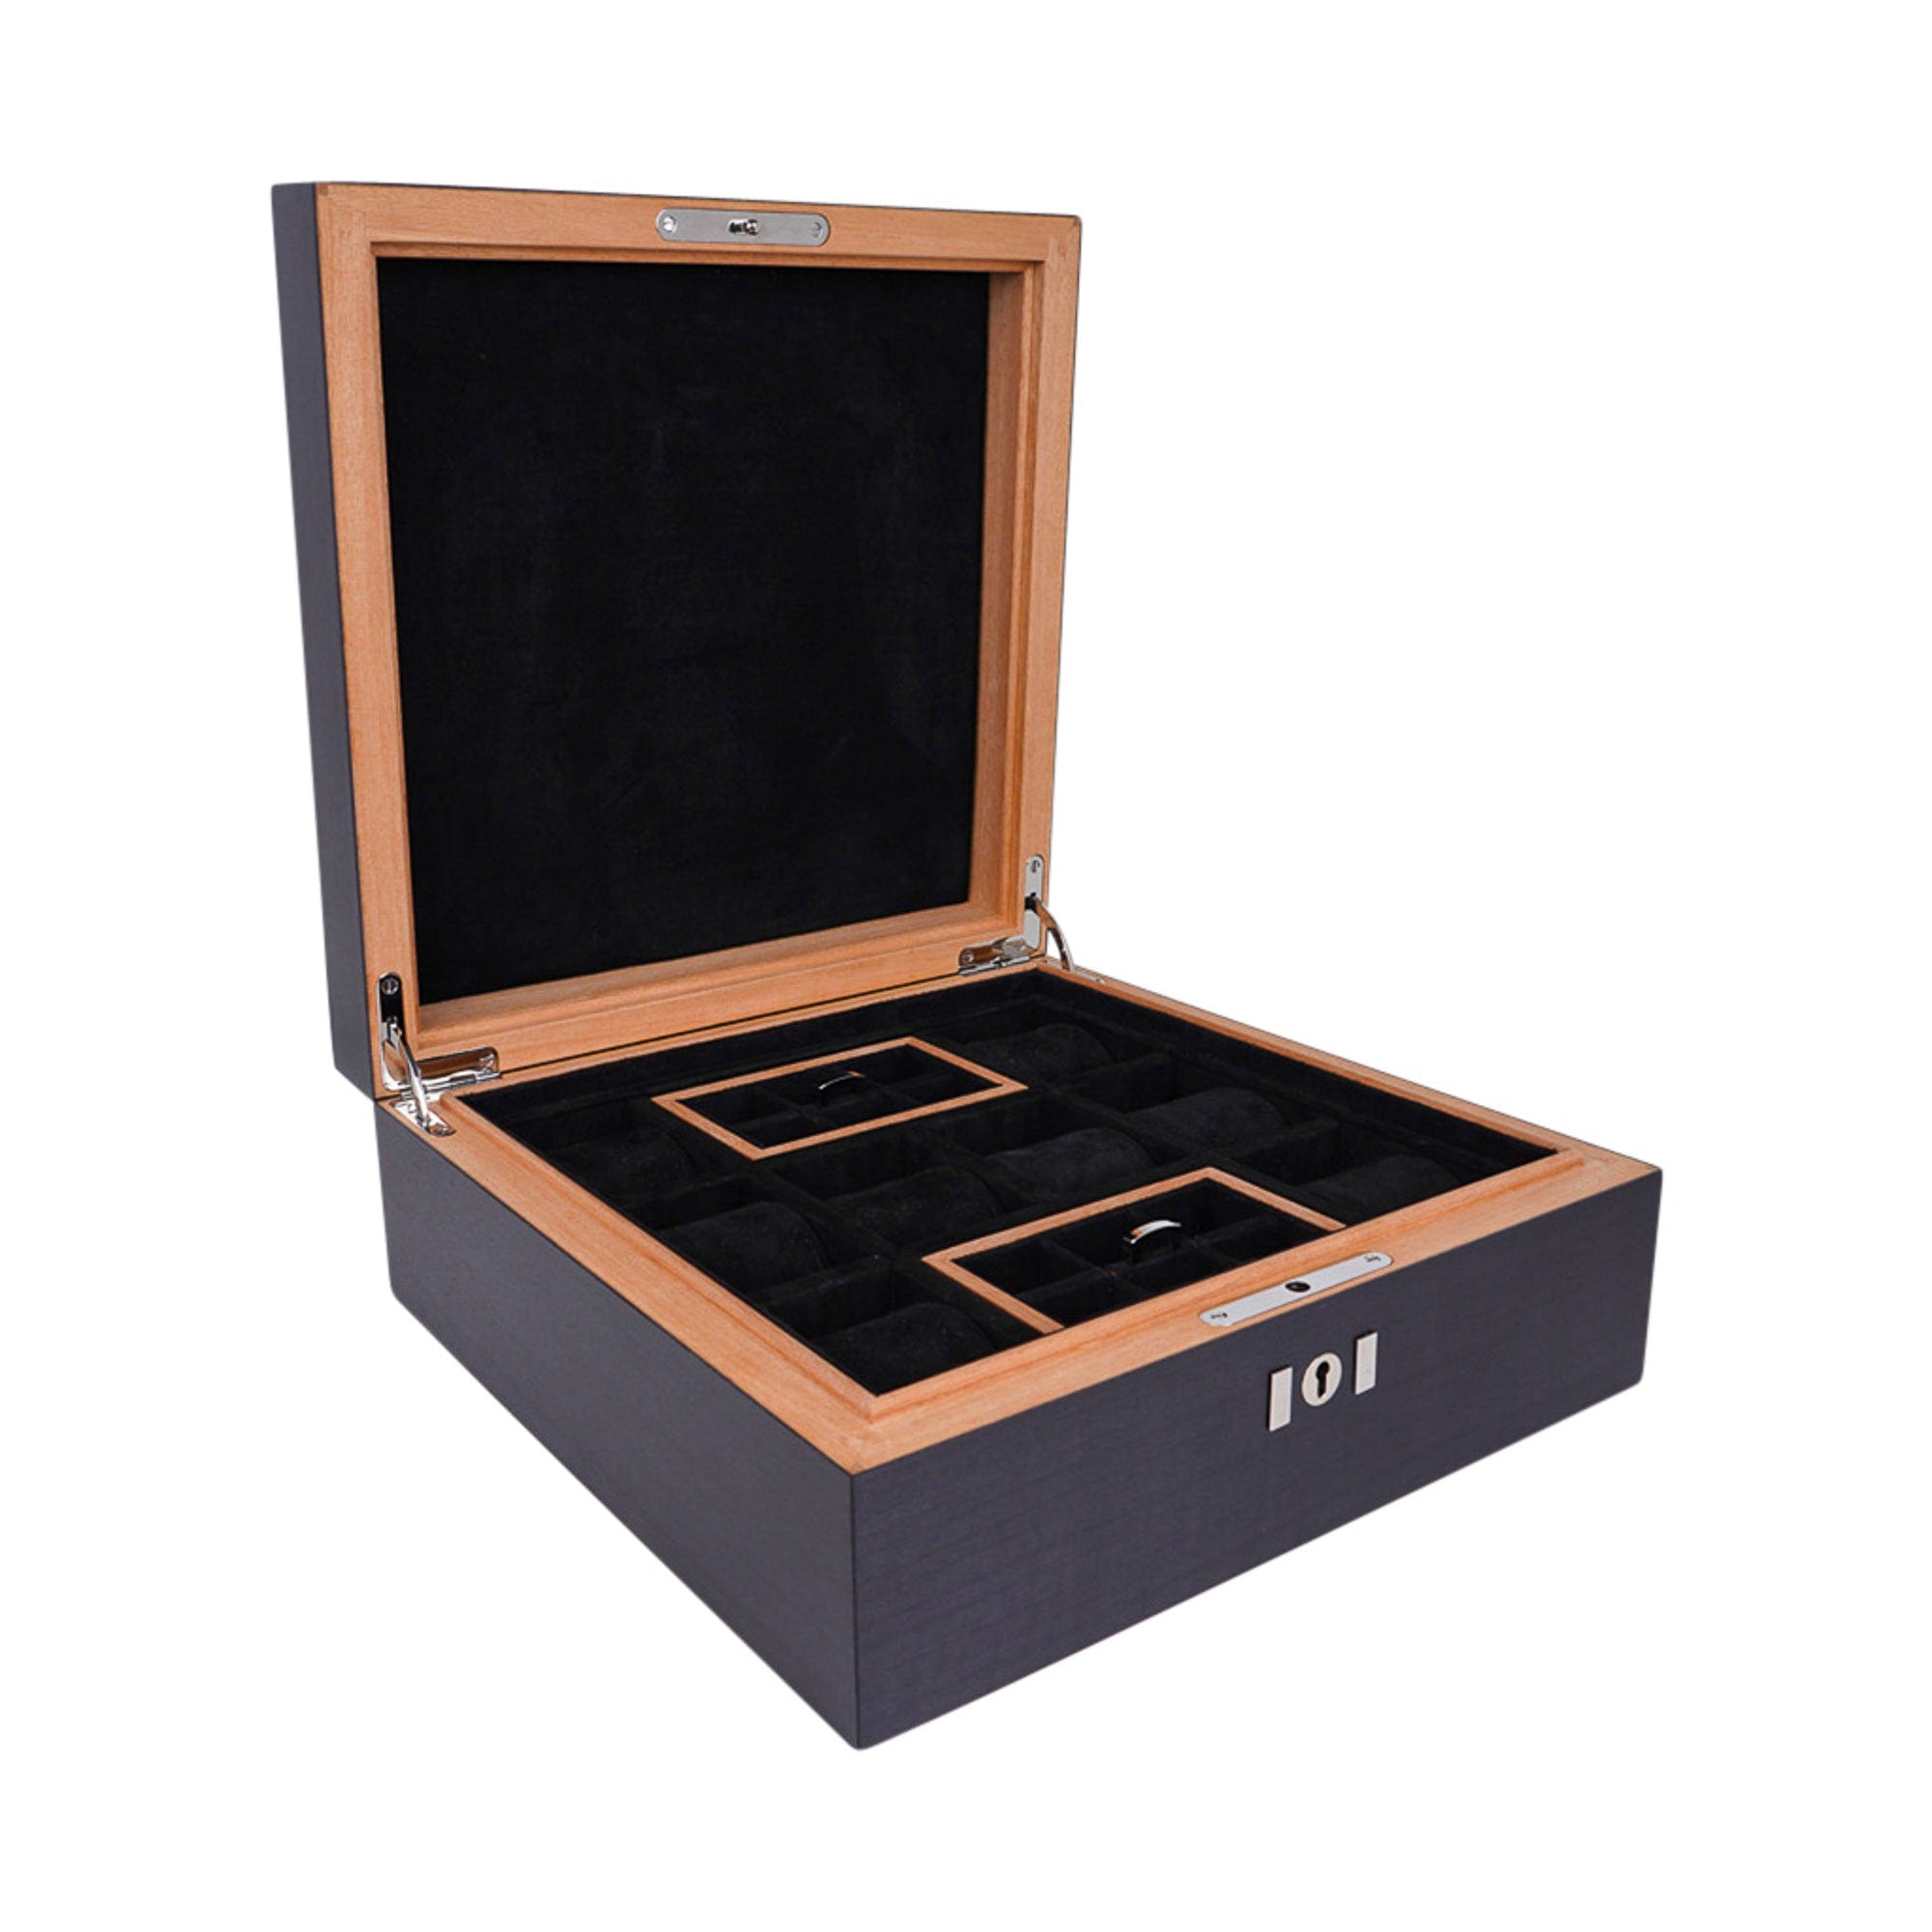 Hermes B03 Luxurious Precious Walnut Wood Watch Box Impressive